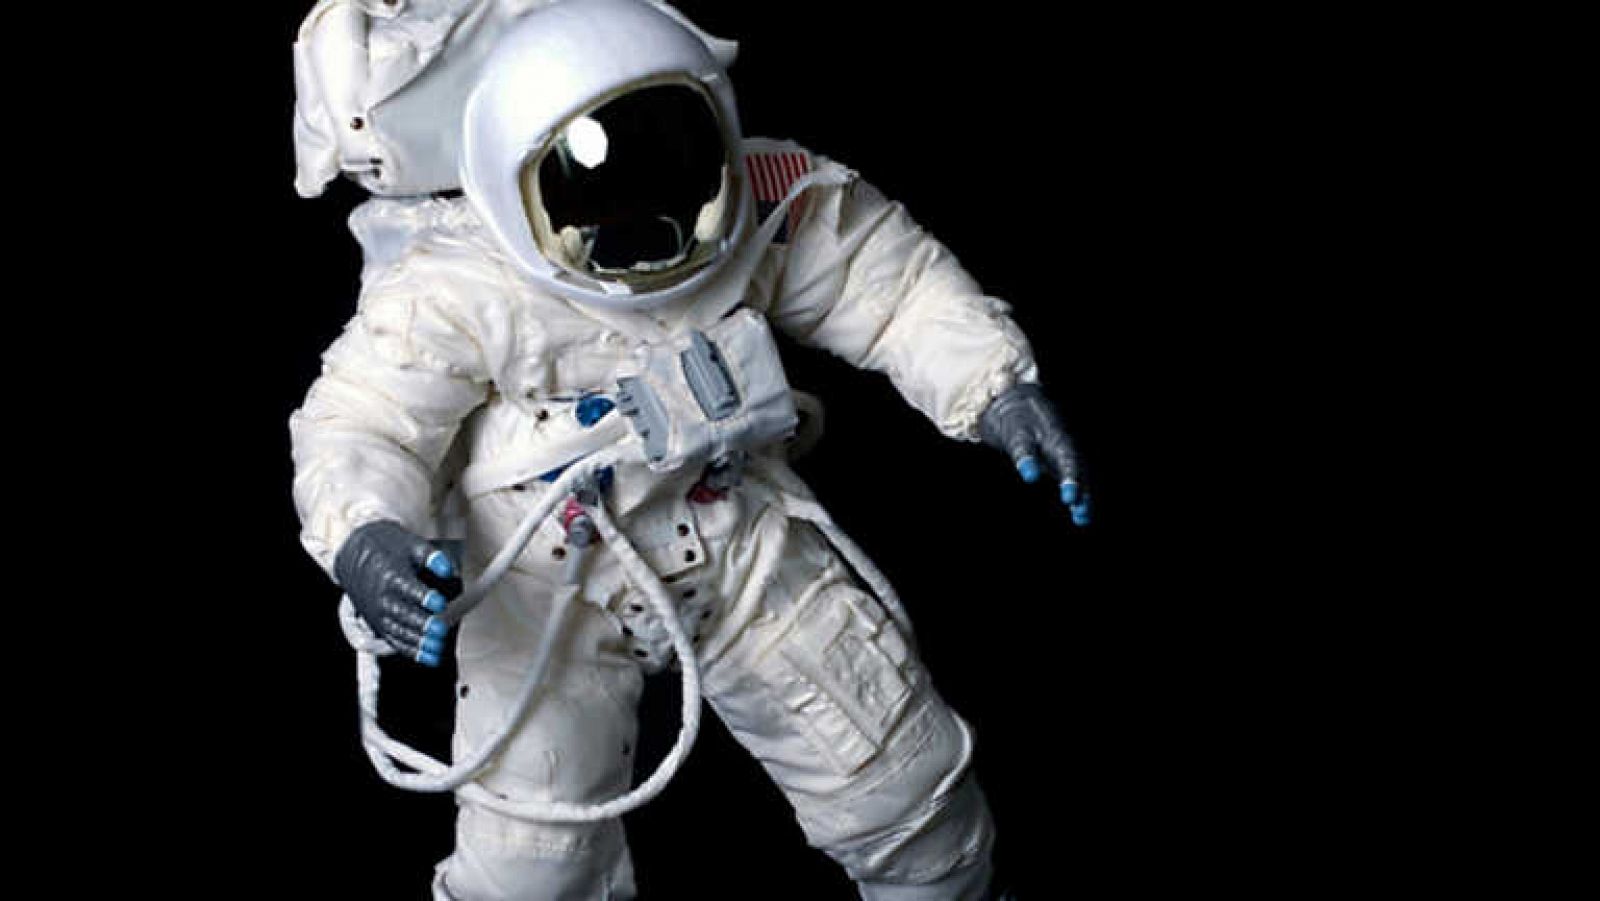 Docufilia - ¿El final de los astronautas?